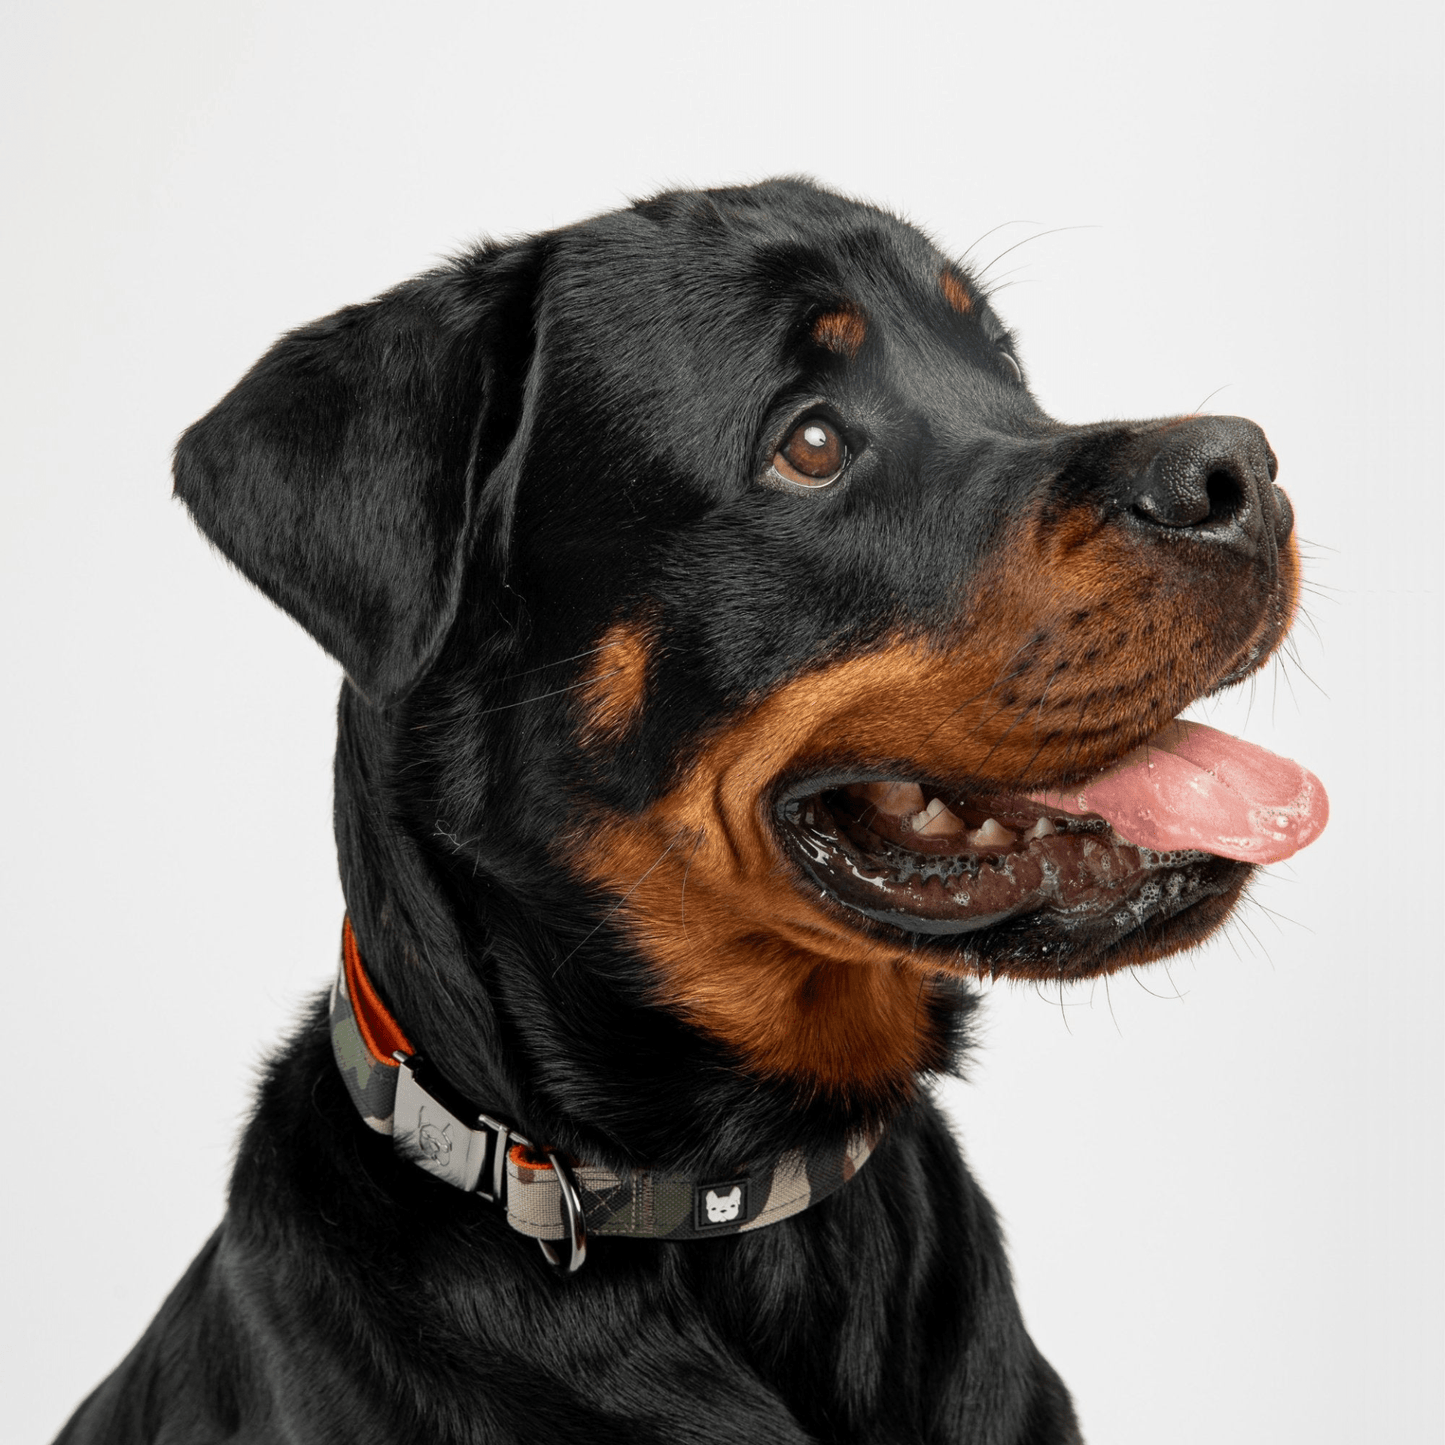 Dog and Pet Stuff Dog Collar - Camo